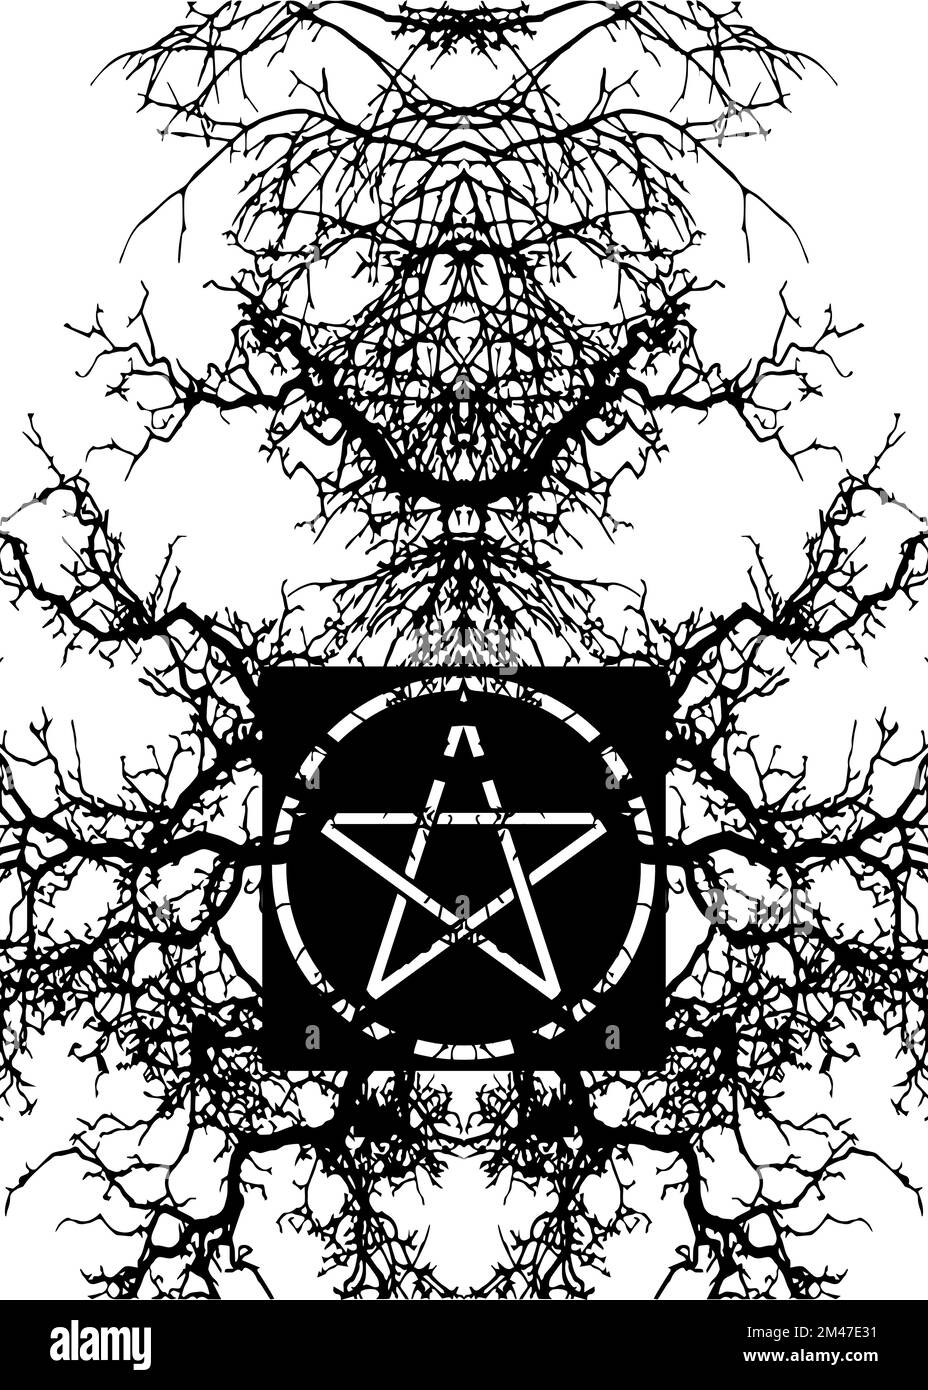 Fond magique noir et symbole de pentagramme mystique, bannière de la Franc-maçonnerie et des sociétés secrètes, dessin mystique occulte et spirituel isolé sur blanc Illustration de Vecteur